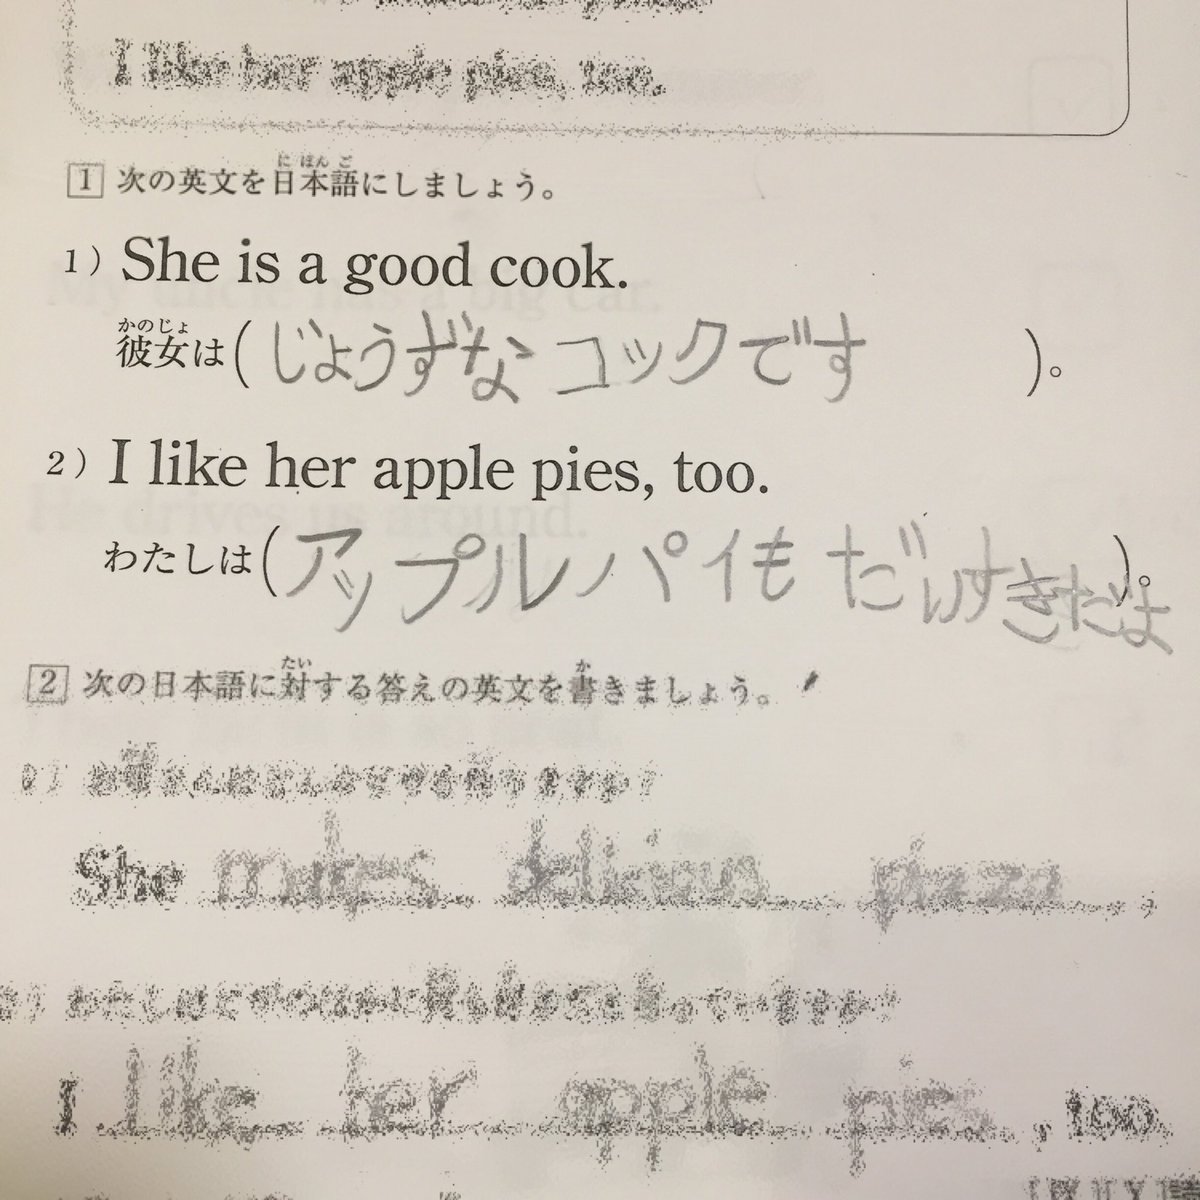 Hd 上姫 ママ友が公文の英語のテスト をくれたのでやらせてみた 英語 日本語訳ってやったことないぞ と思いつつ どんな文を書くのか気になって けっこうほっこりした日本語訳に仕上げてくれました